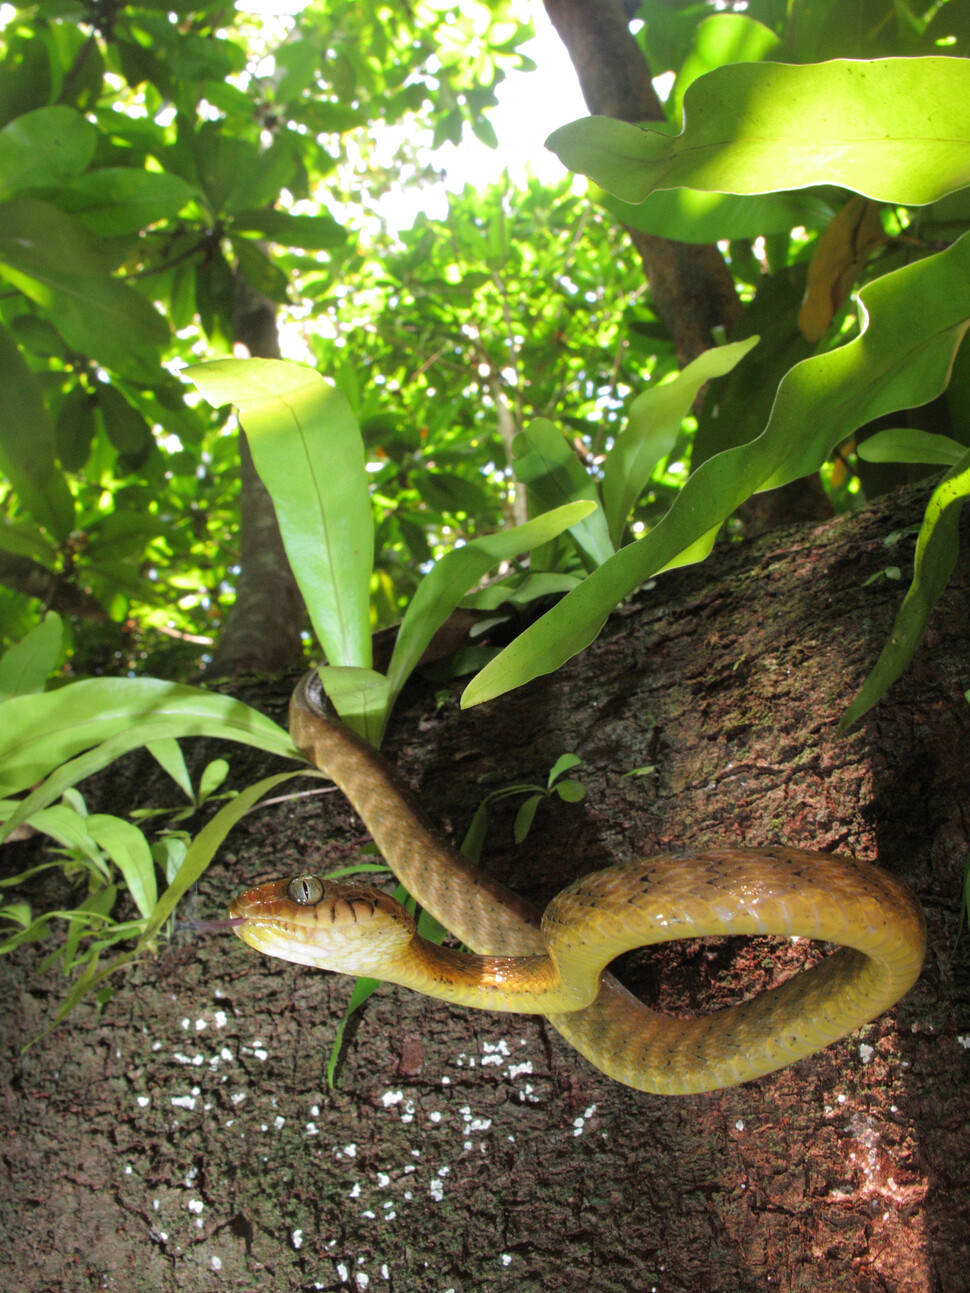 갈색나무뱀은 나무 타는 선수이다. 작은 돌기라도 있으면 기어오르고 매끈한 수직 줄기도 타고 오른다. 비외른 라르드너, 미국 지질조사국 제공.